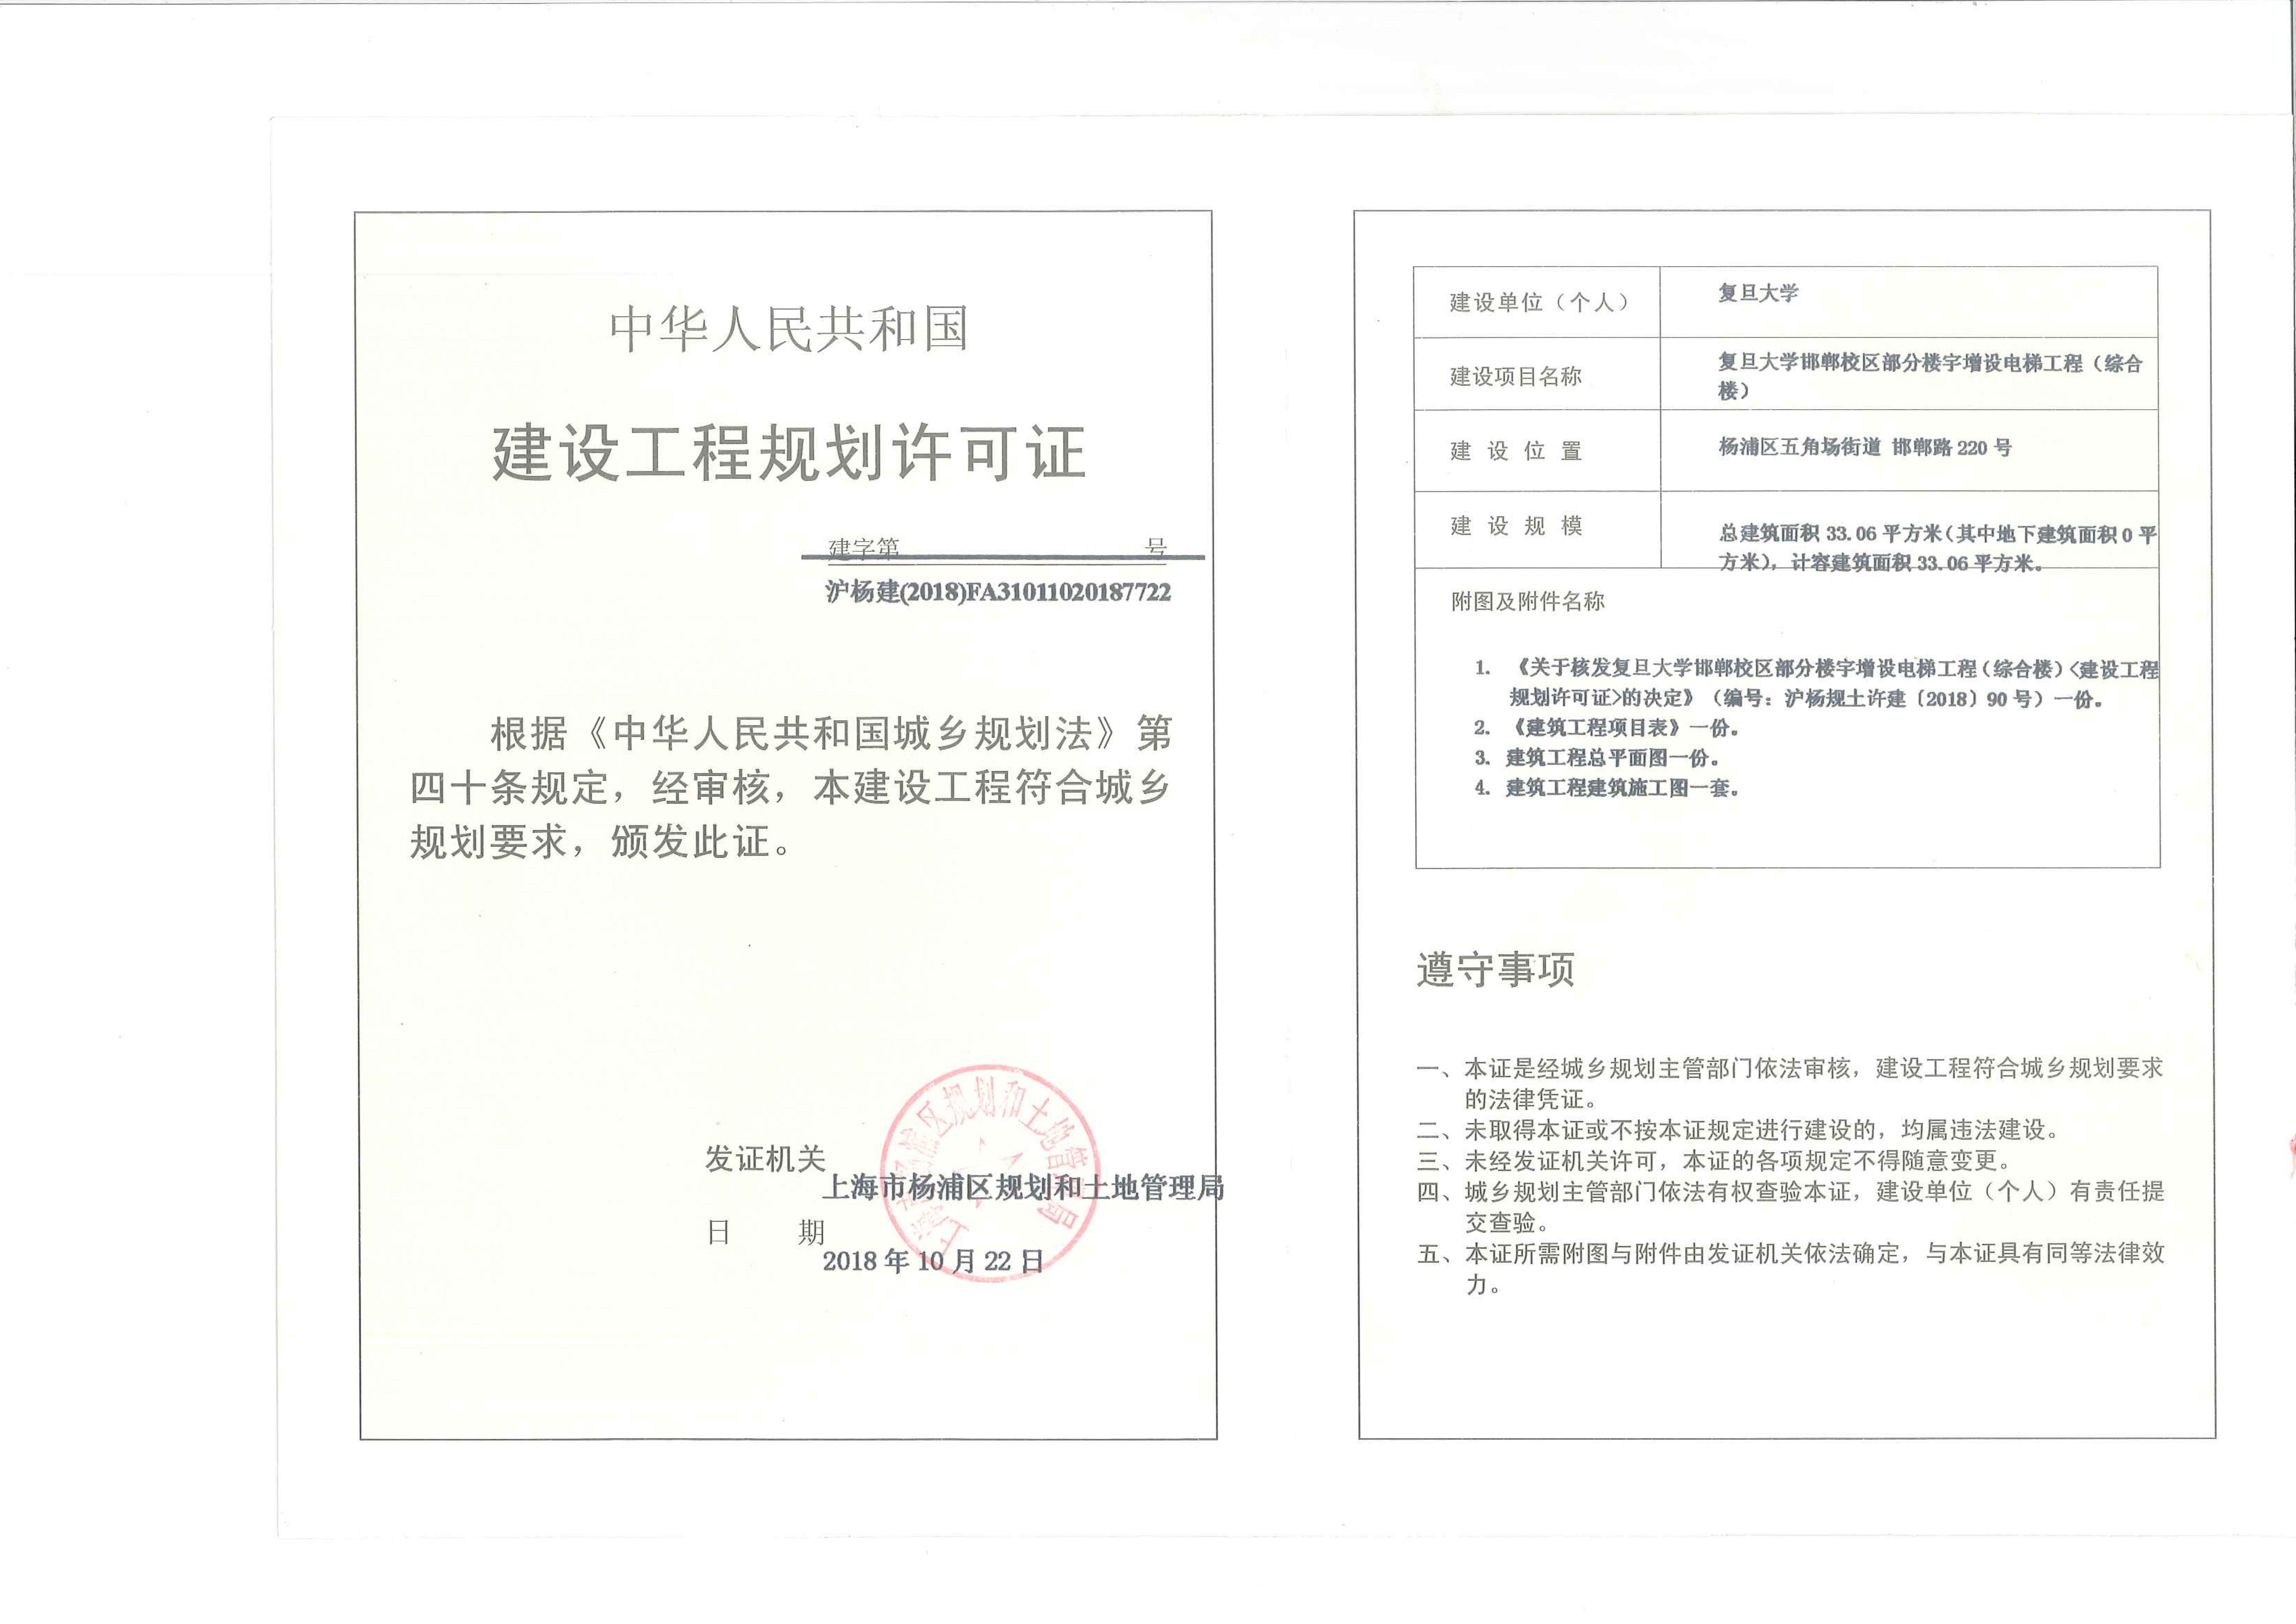 工程规划许可证文本zuihou.jpg